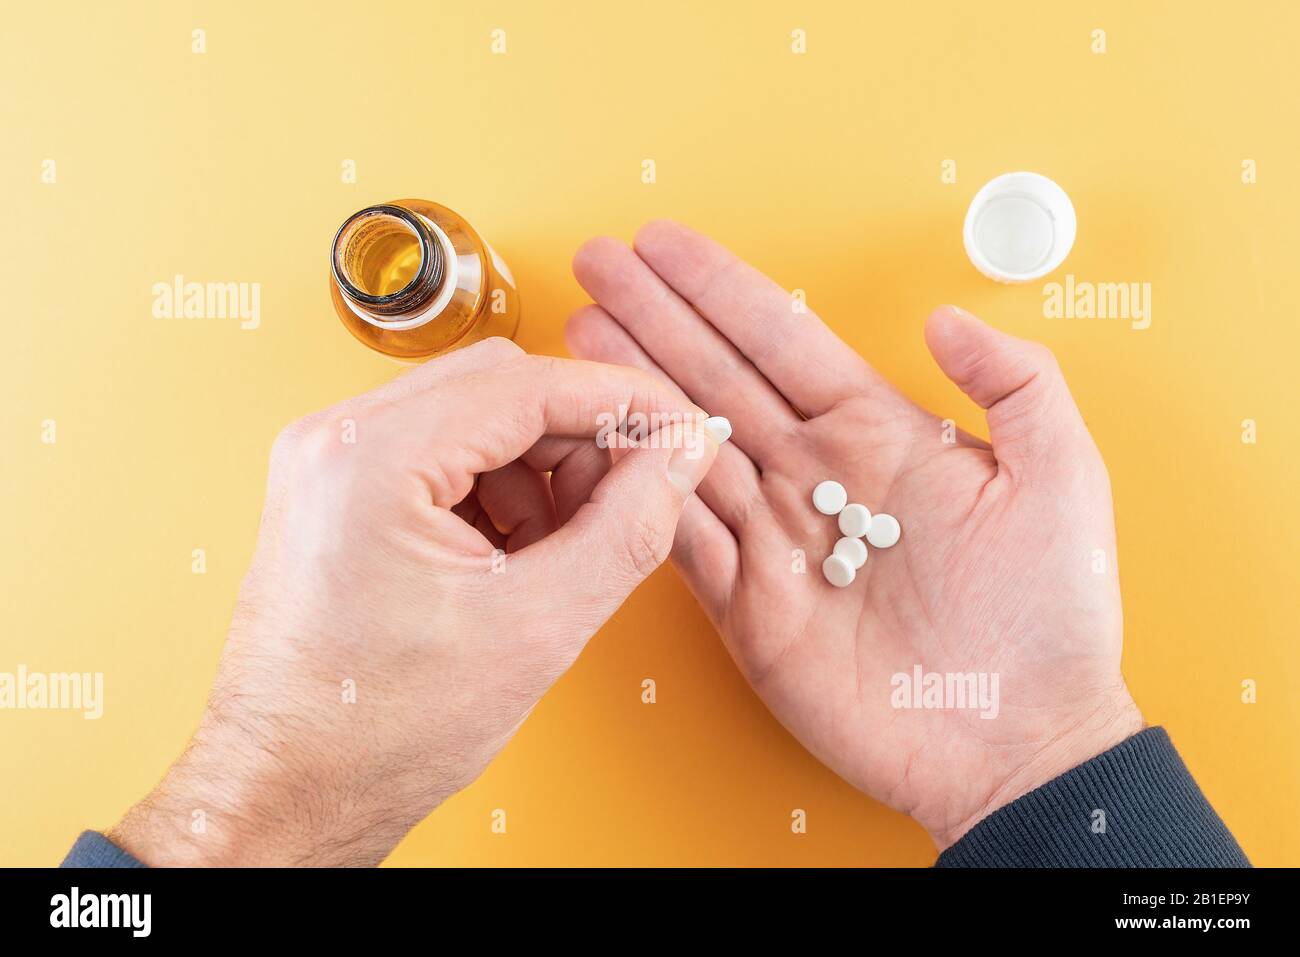 comprimés de médicament dans la paume de la main contre fond orange avec flacon de pilule Banque D'Images